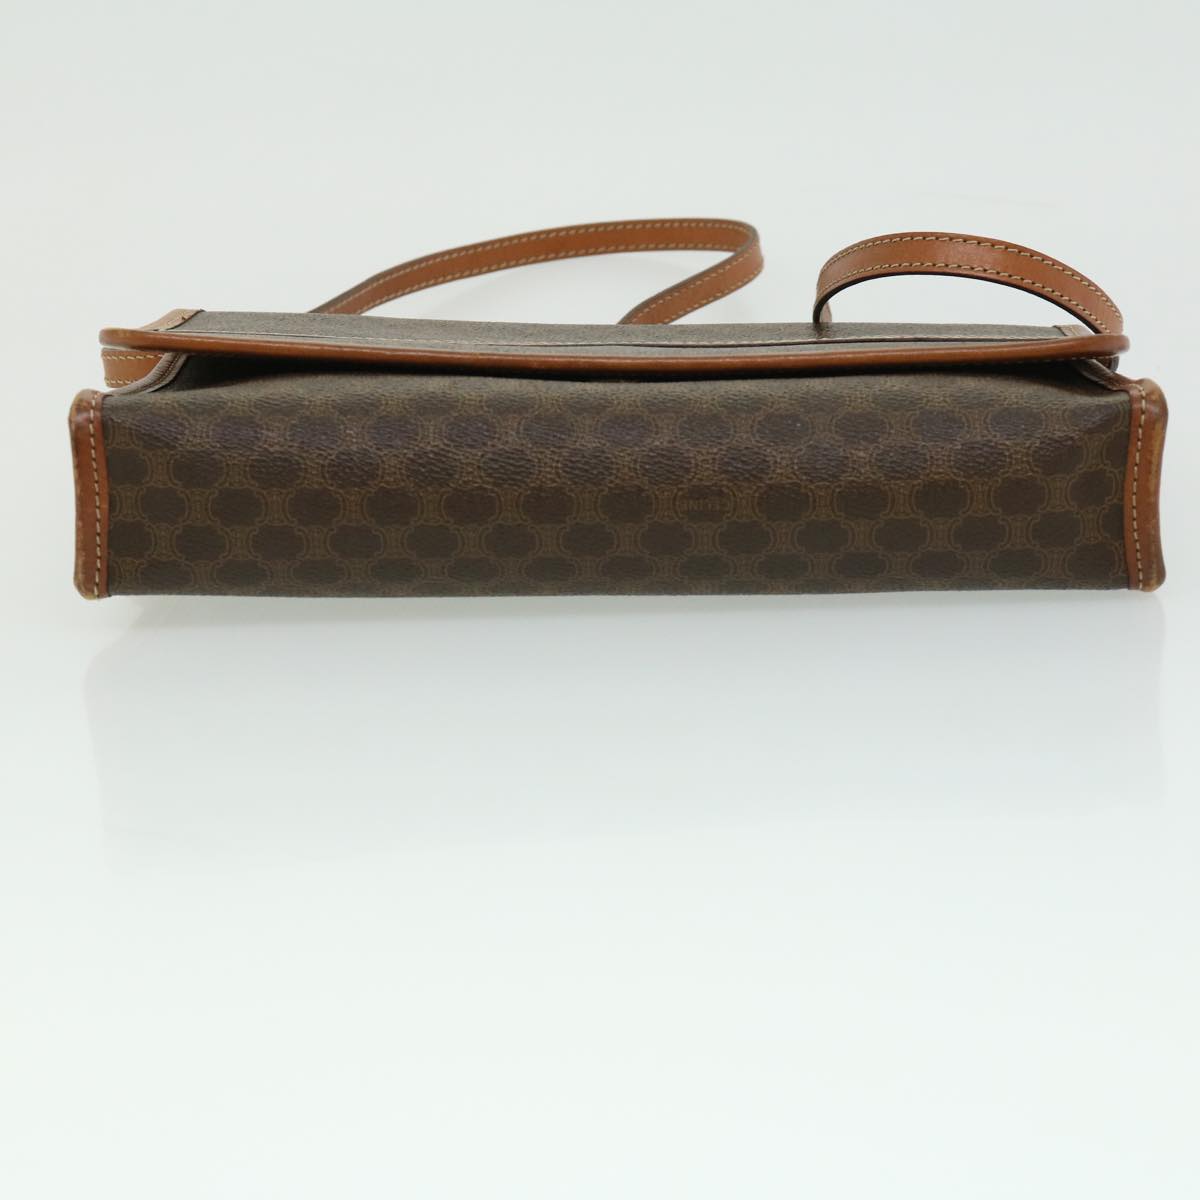 CELINE Macadam Canvas Shoulder Bag PVC Leather Brown Auth 31513